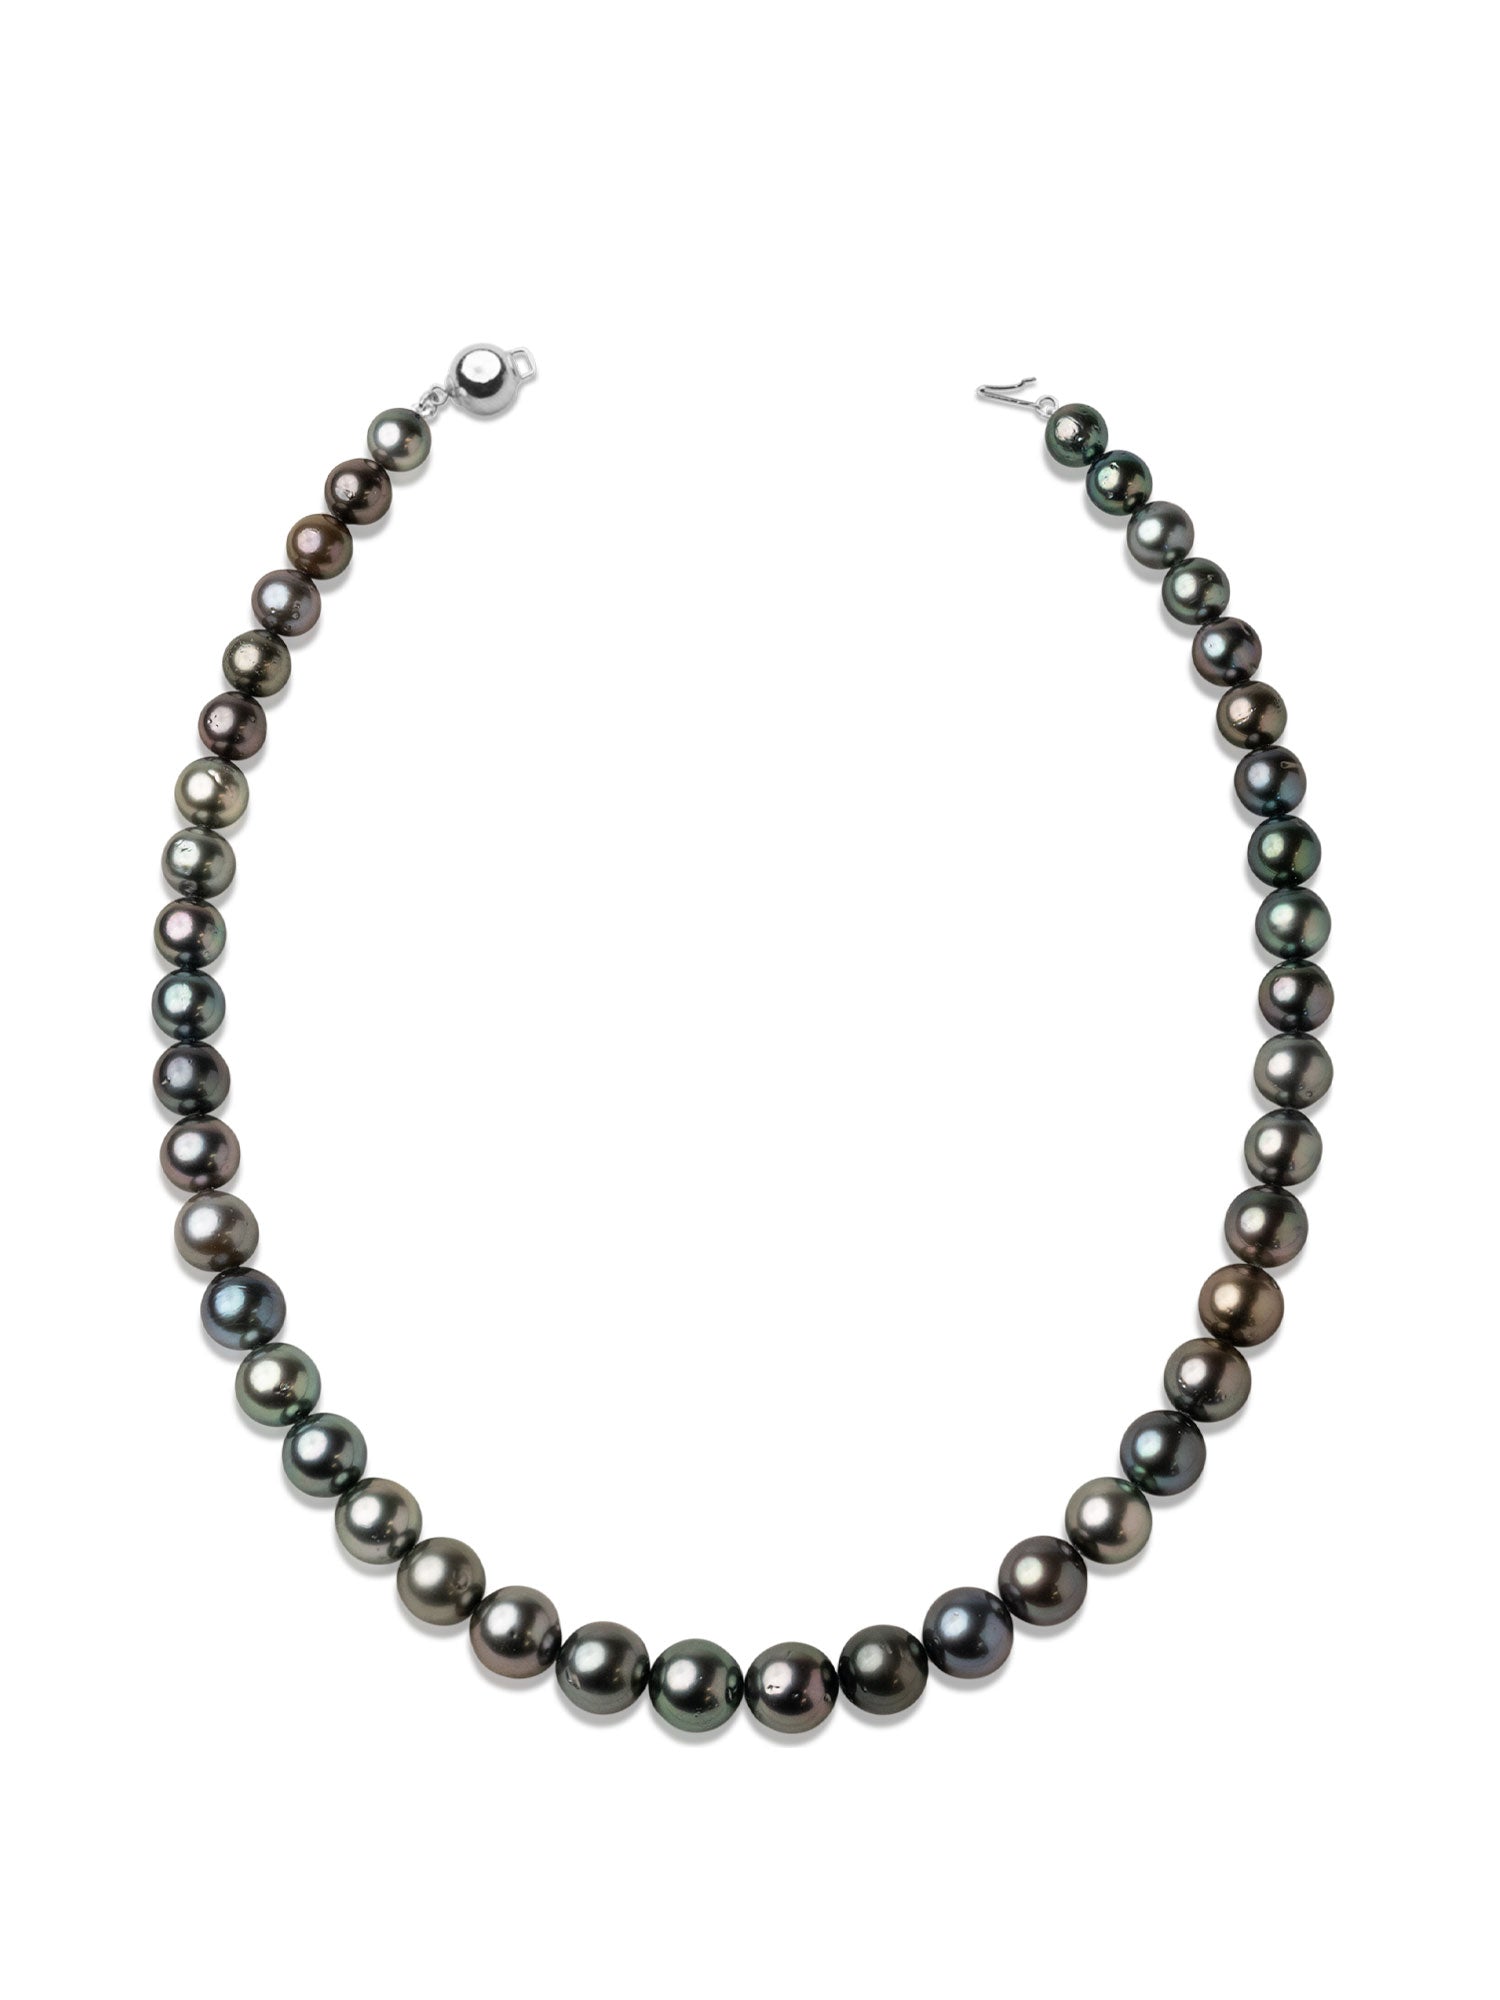 Collar de perlas cultivadas naturales Tahití redondas de 8,5 a 11,2 mm de colores verdoso, gris y bronce